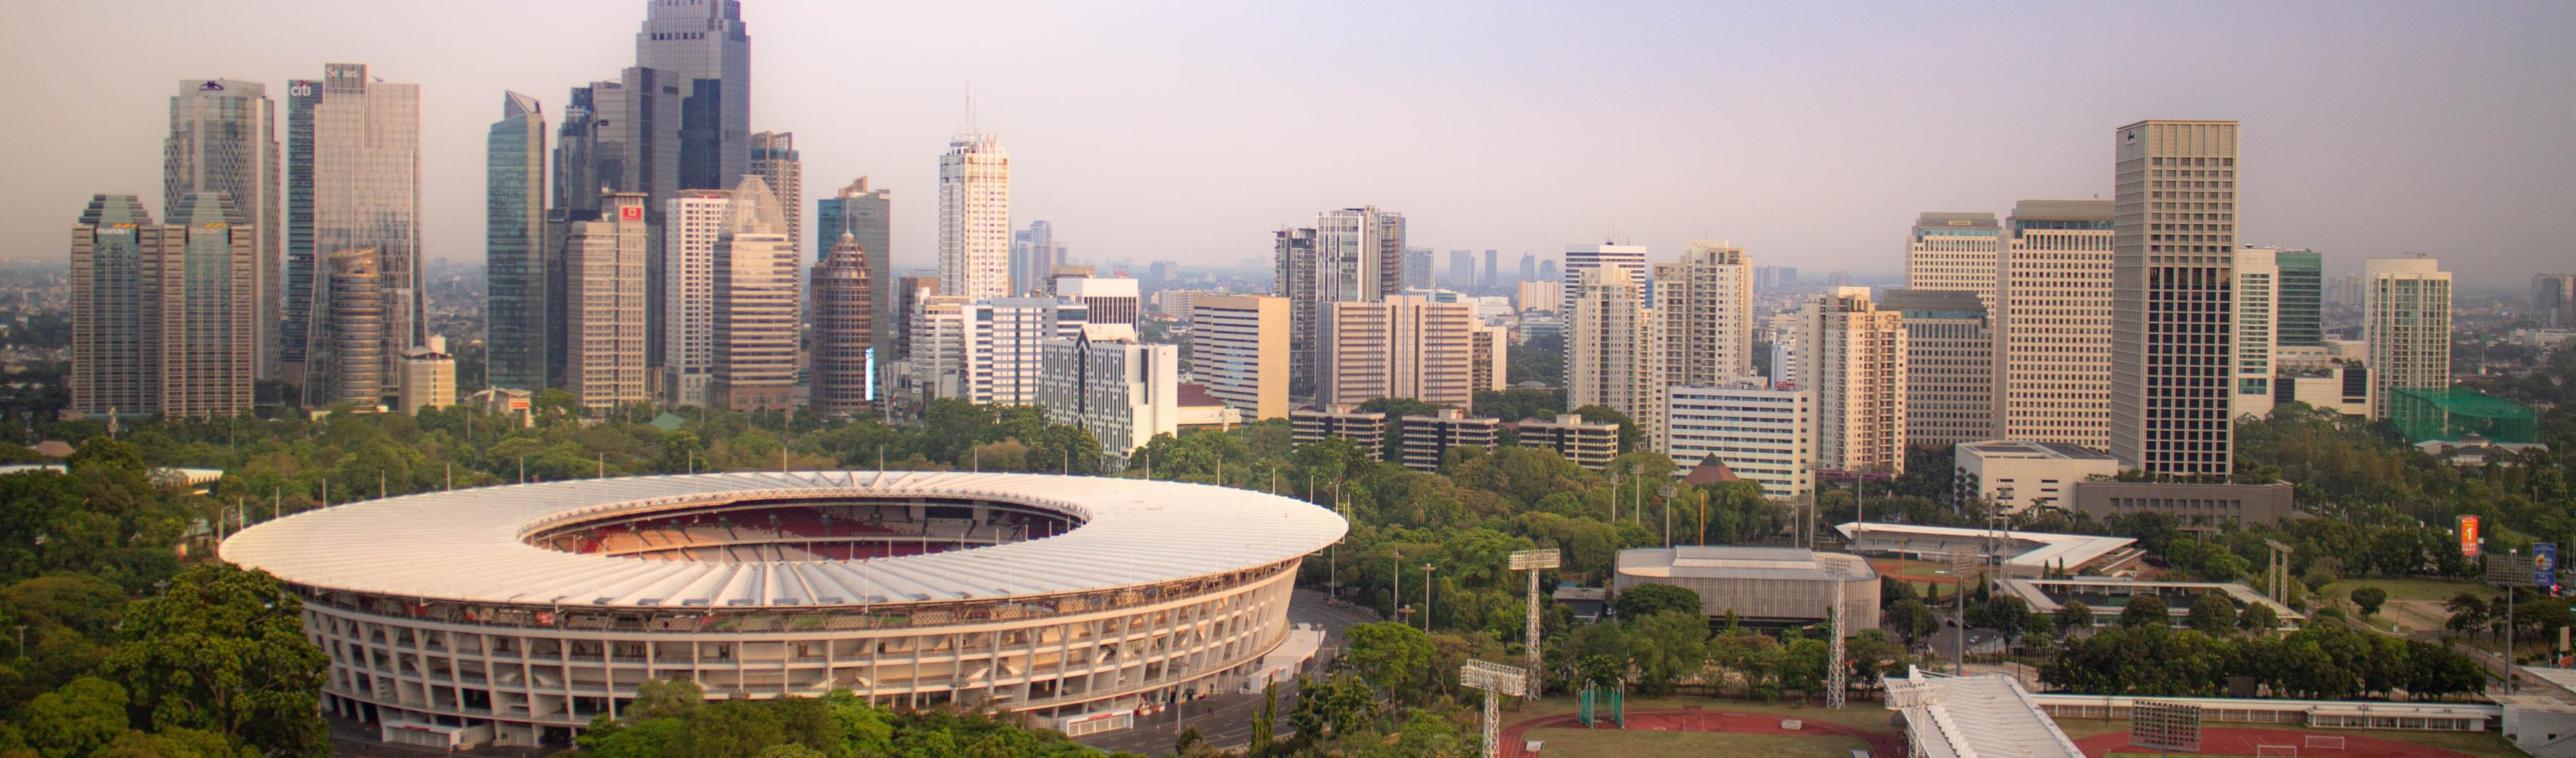 Vista del estadio Gelora Bung Karno de Yakarta rodeado de árboles y del perfil de la ciudad.